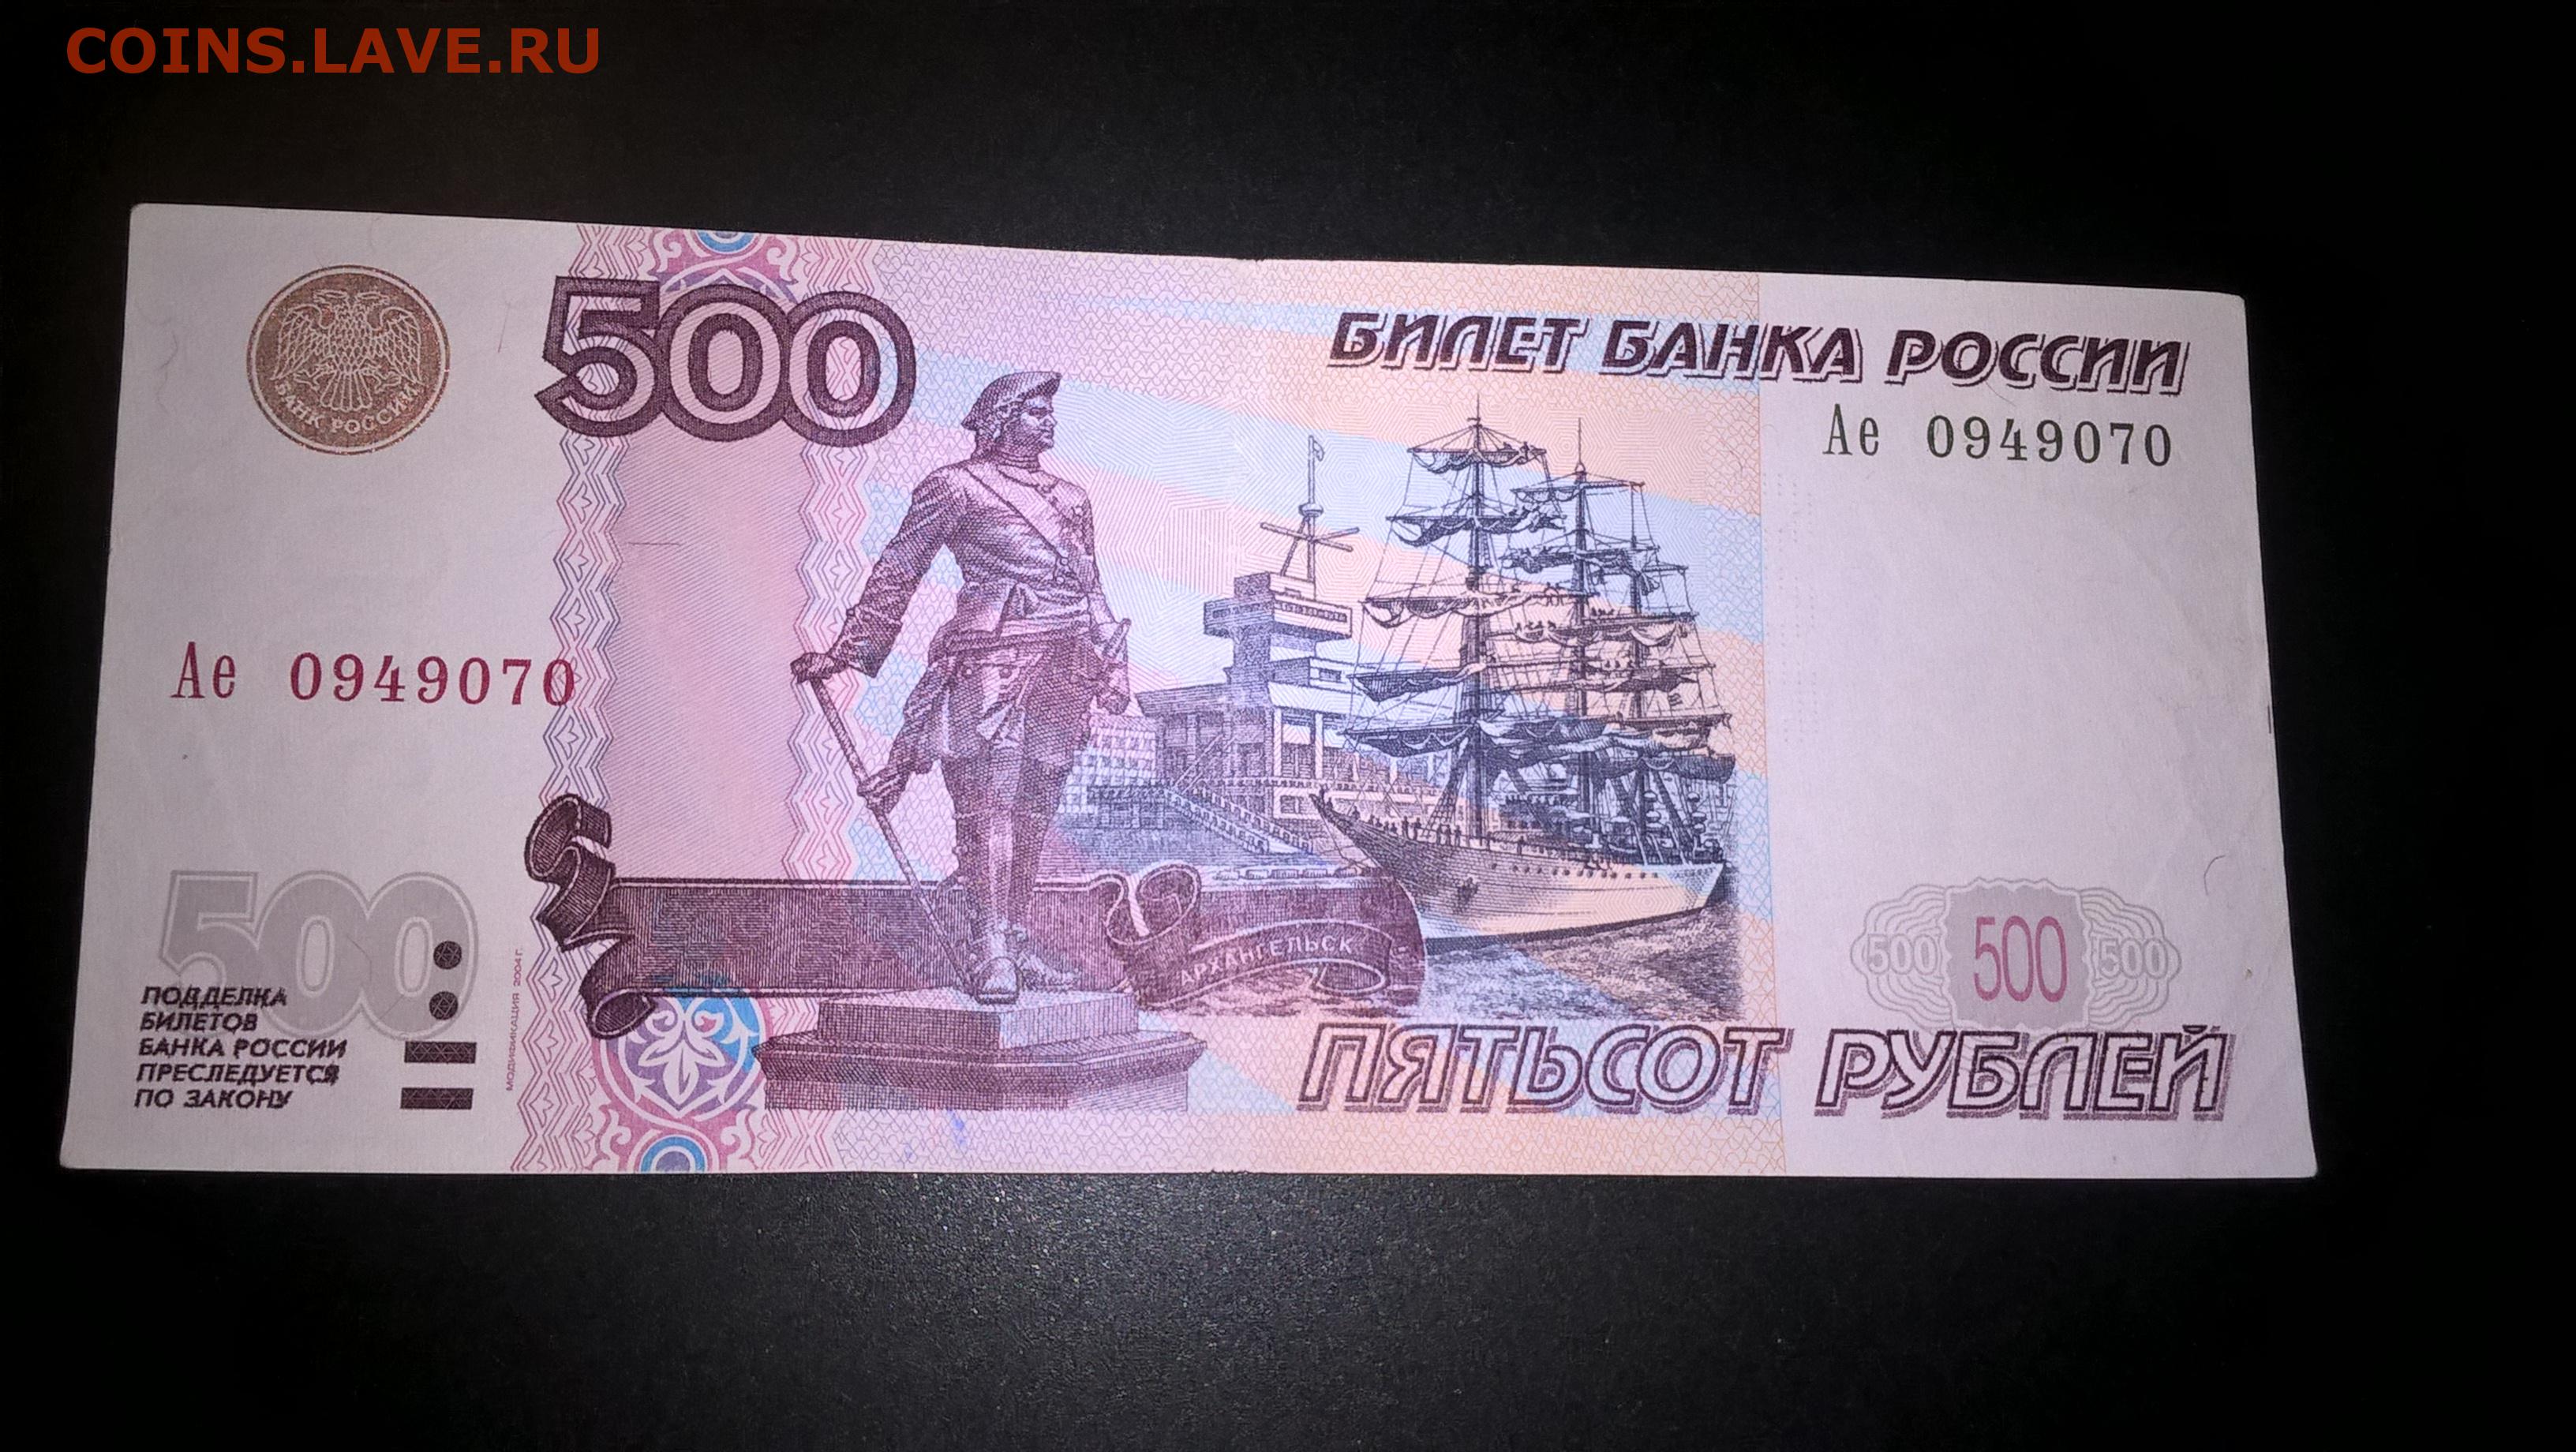 Пособия 500 рублей. 500 Рублей 1997. Билет банка России 500 рублей. Пятьсот рублей 1997. Банкноты с автомобилями.